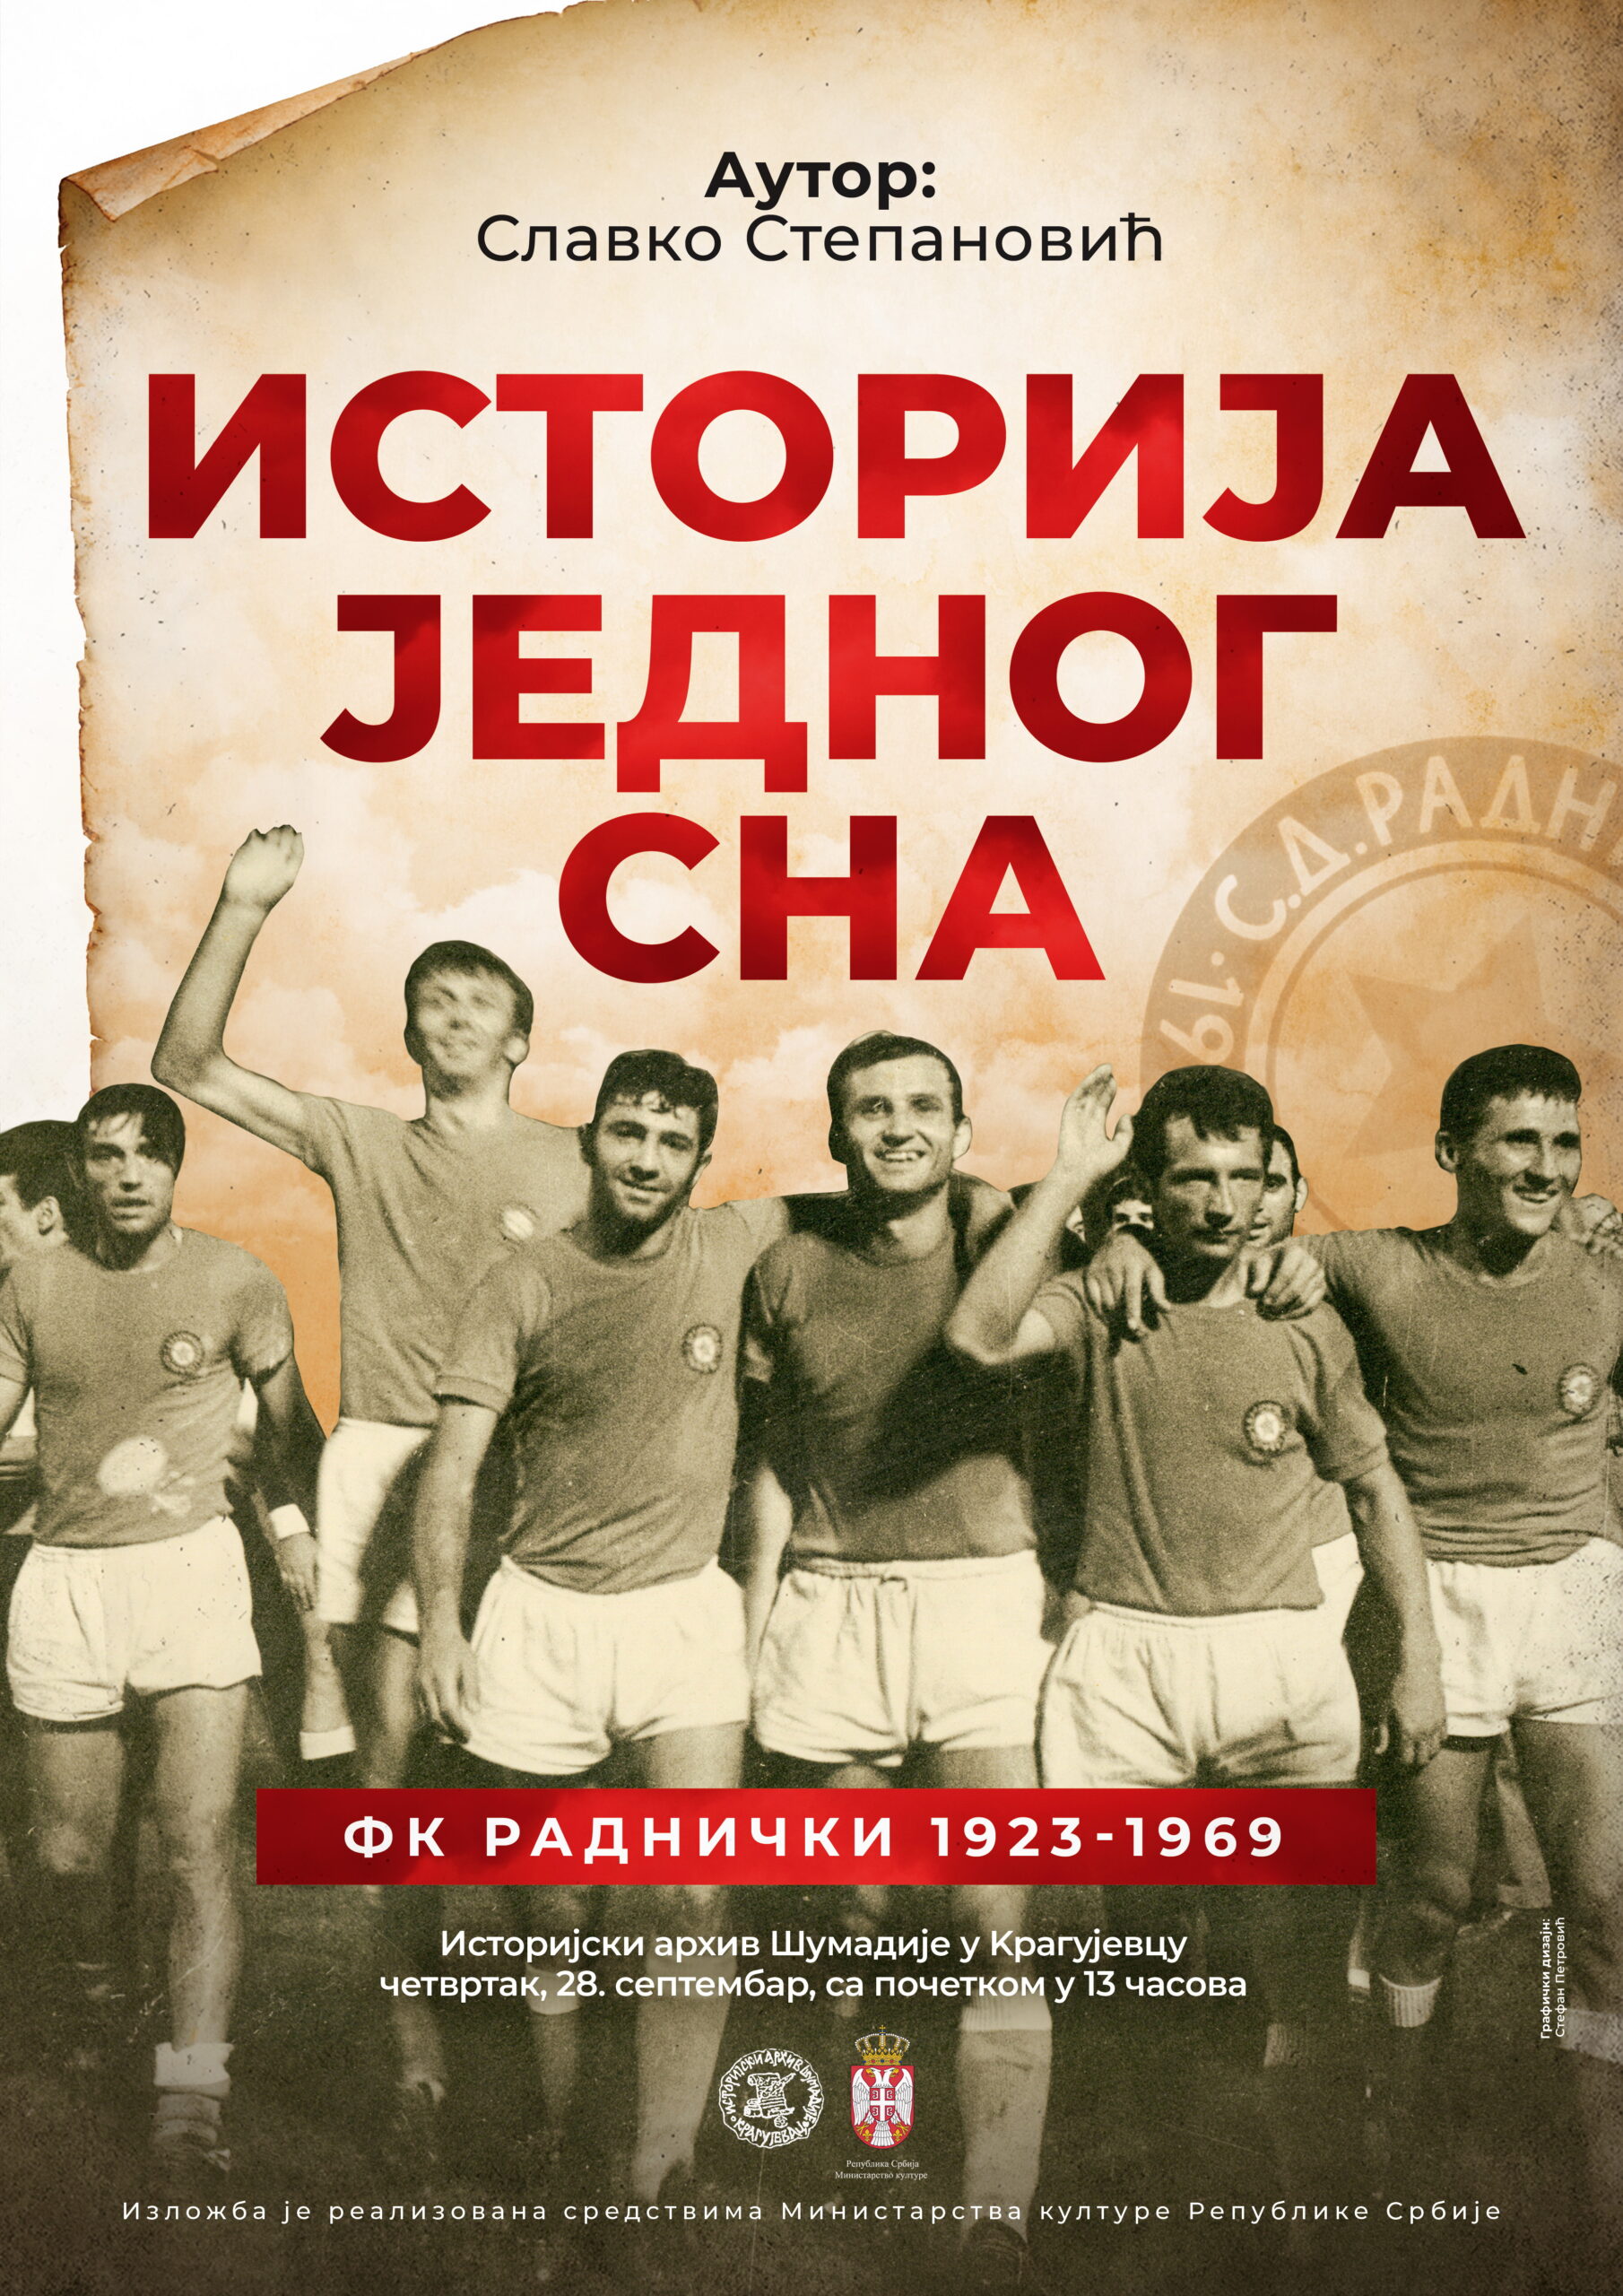 FK Radnički 1923 - Glas Šumadije